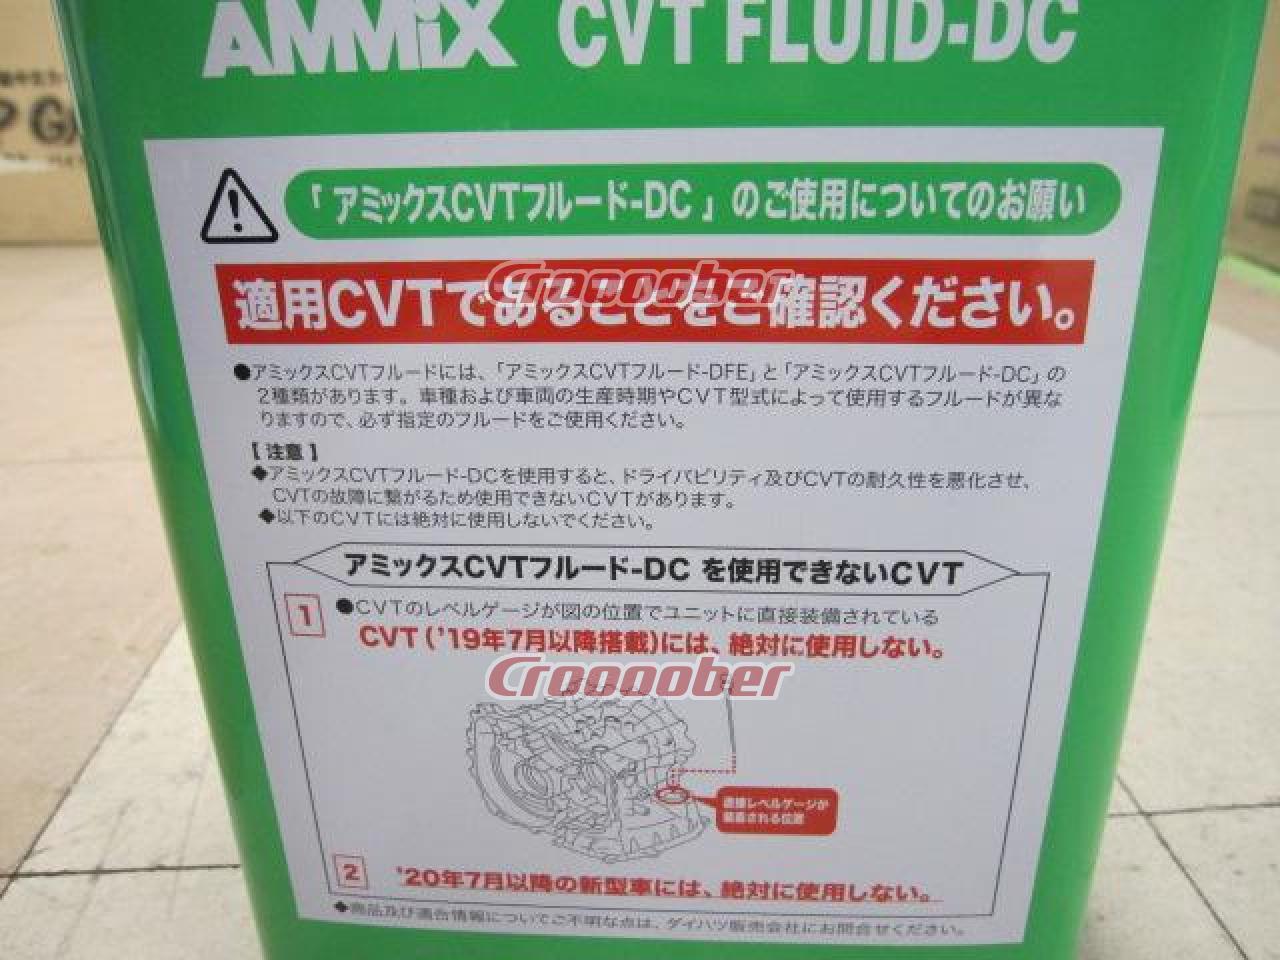 ダイハツ純正(DAIHATSU) AMMiX CVT FLUID-DC 4リットル 品番:08700-K9000 | メンテナンス  その他メンテナンスパーツの通販なら | Croooober(クルーバー)